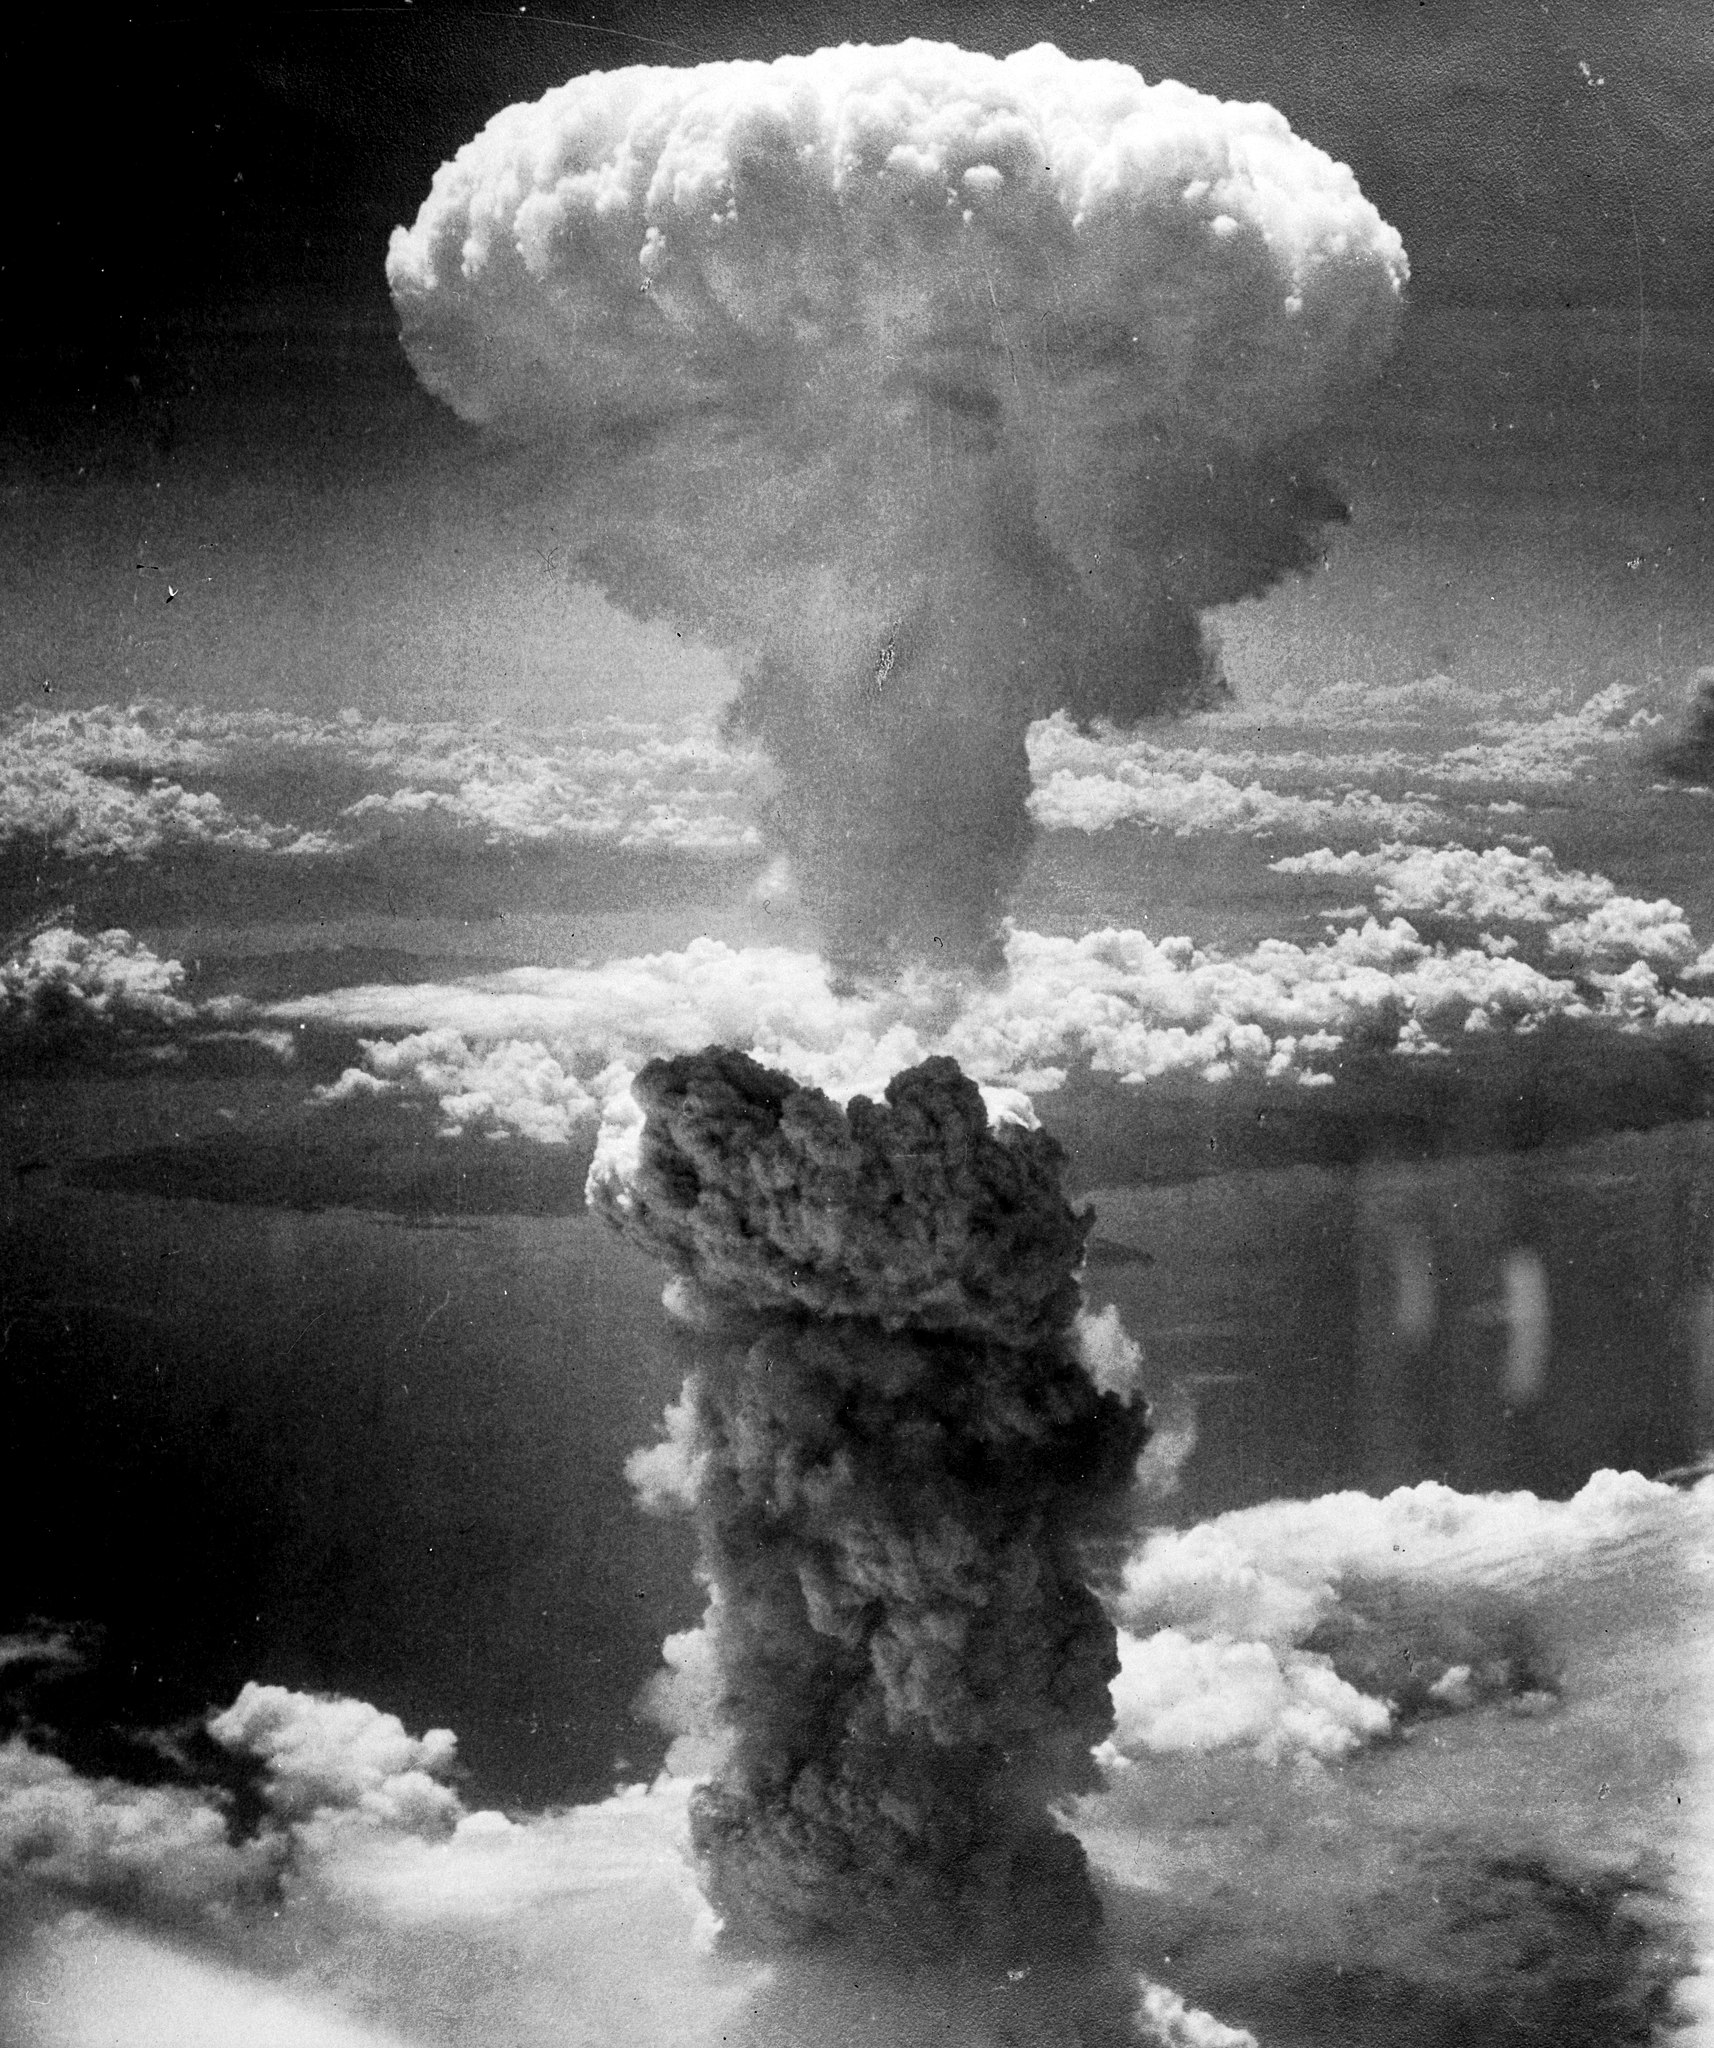 Εικόνα από την έκρηξη που δημιούργησε η ρίψη της ατομικής βόμβας στο Ναγκασάκι. Photo Credits: Wikimedia Commons